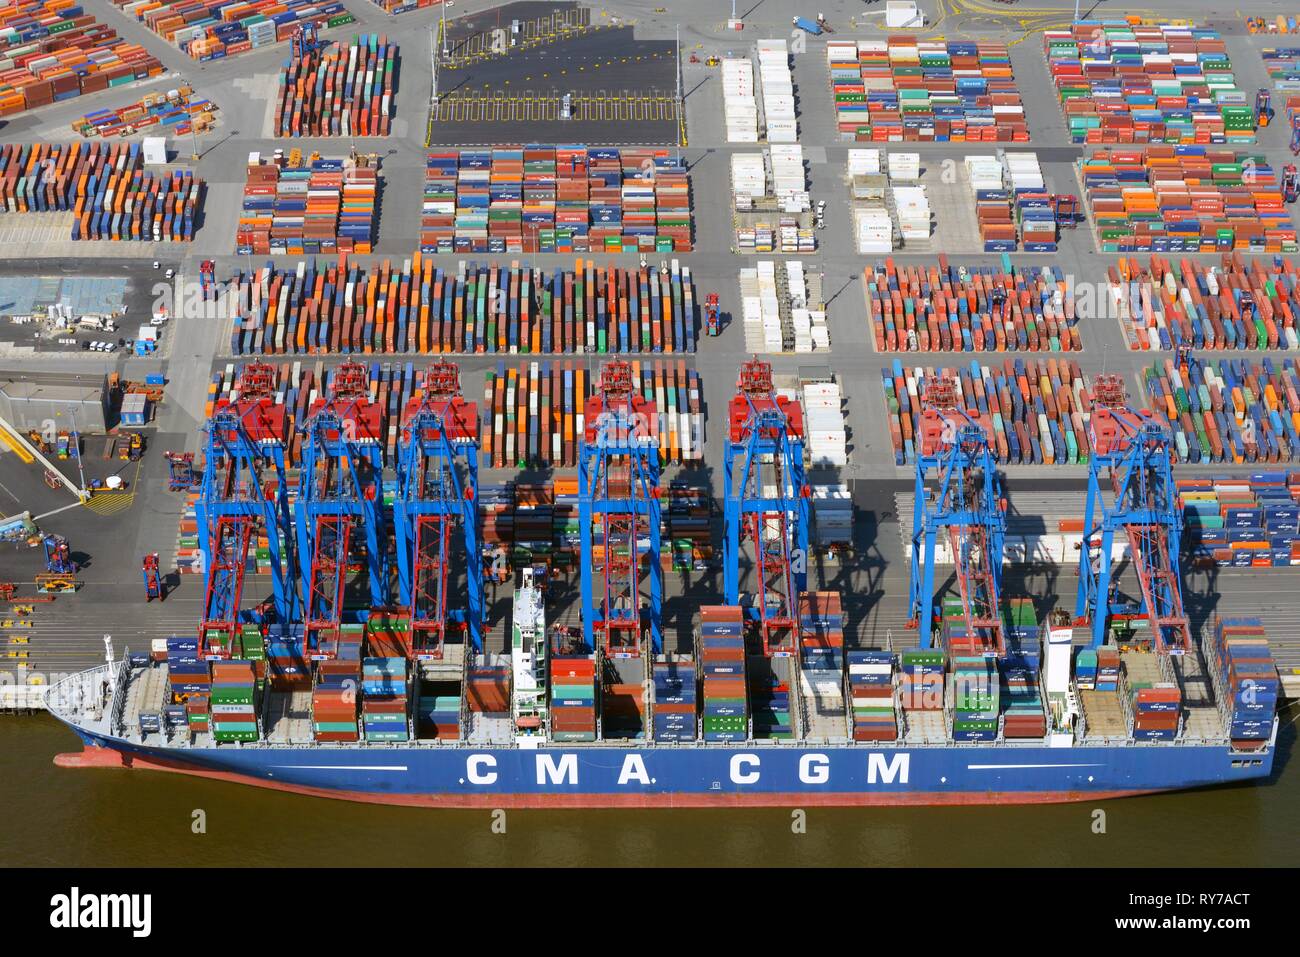 Containerschiff CMA CGM am Containerhafen, Beladung von Containern, Hamburg, Deutschland Stockfoto